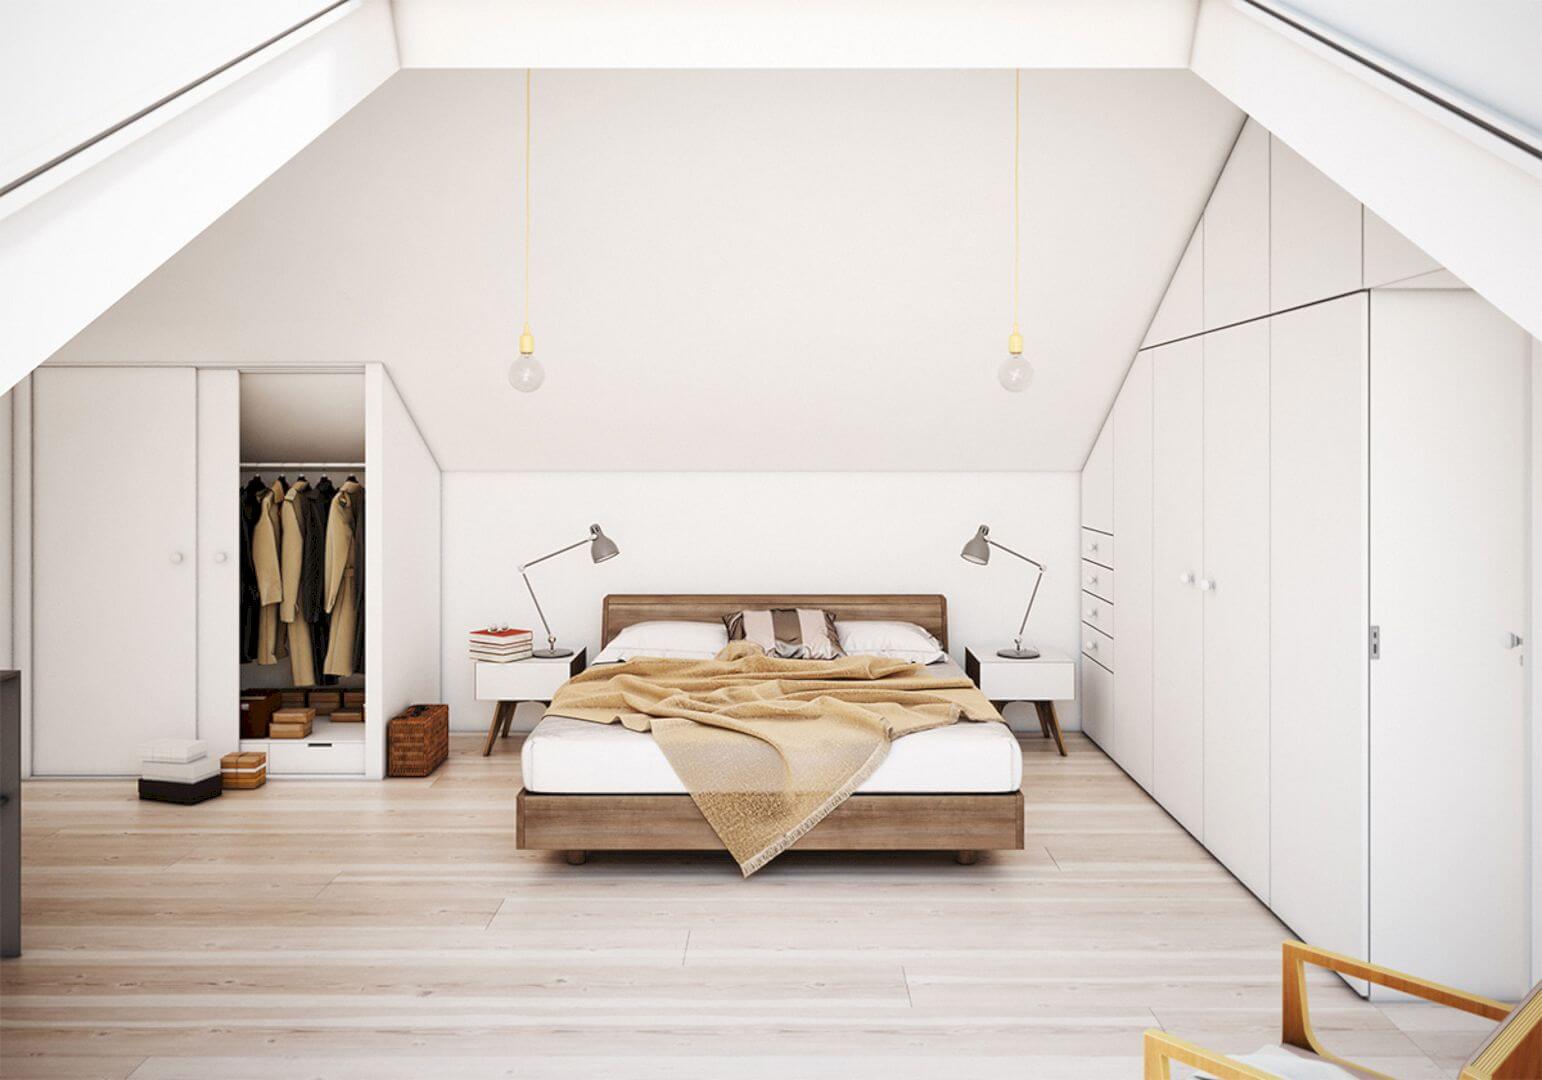 Unique Attic Bedroom Ideas And Designs, Small Attic Bedroom Design Ideas